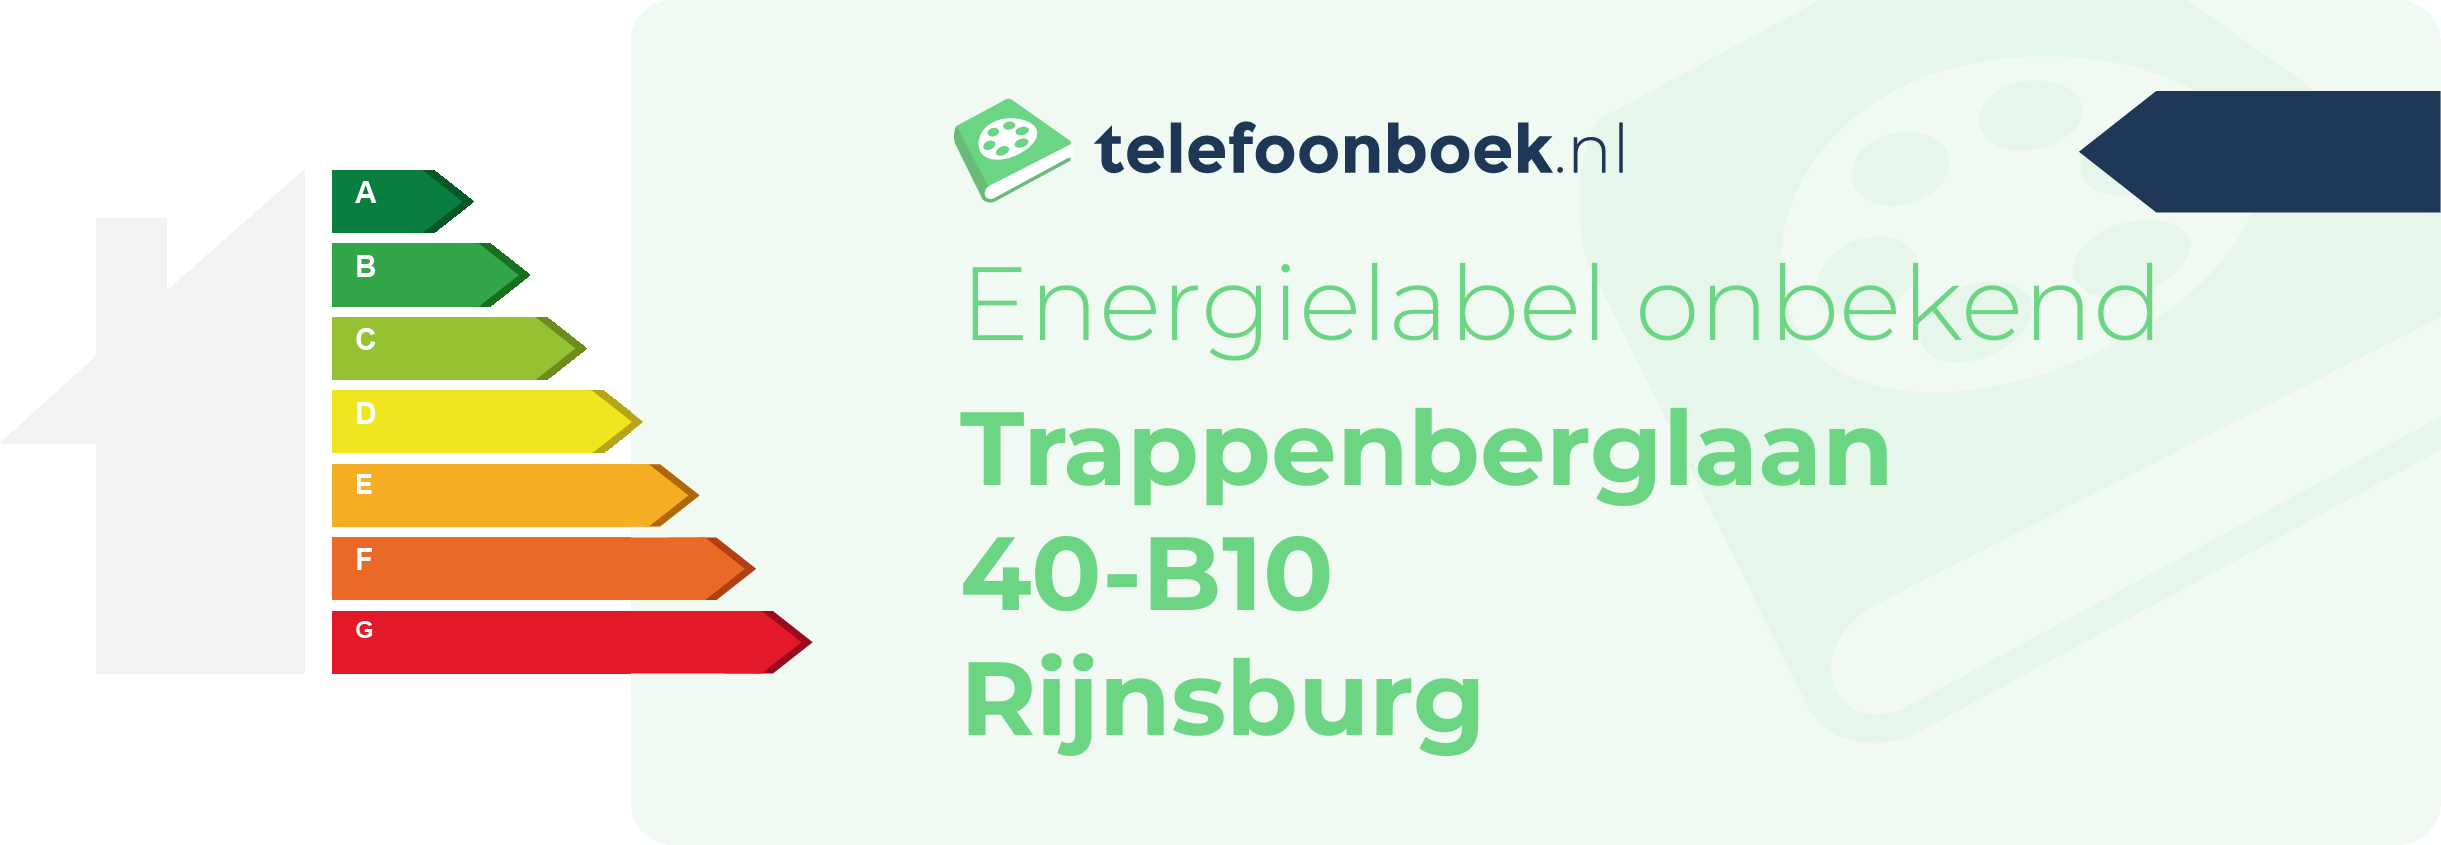 Energielabel Trappenberglaan 40-B10 Rijnsburg